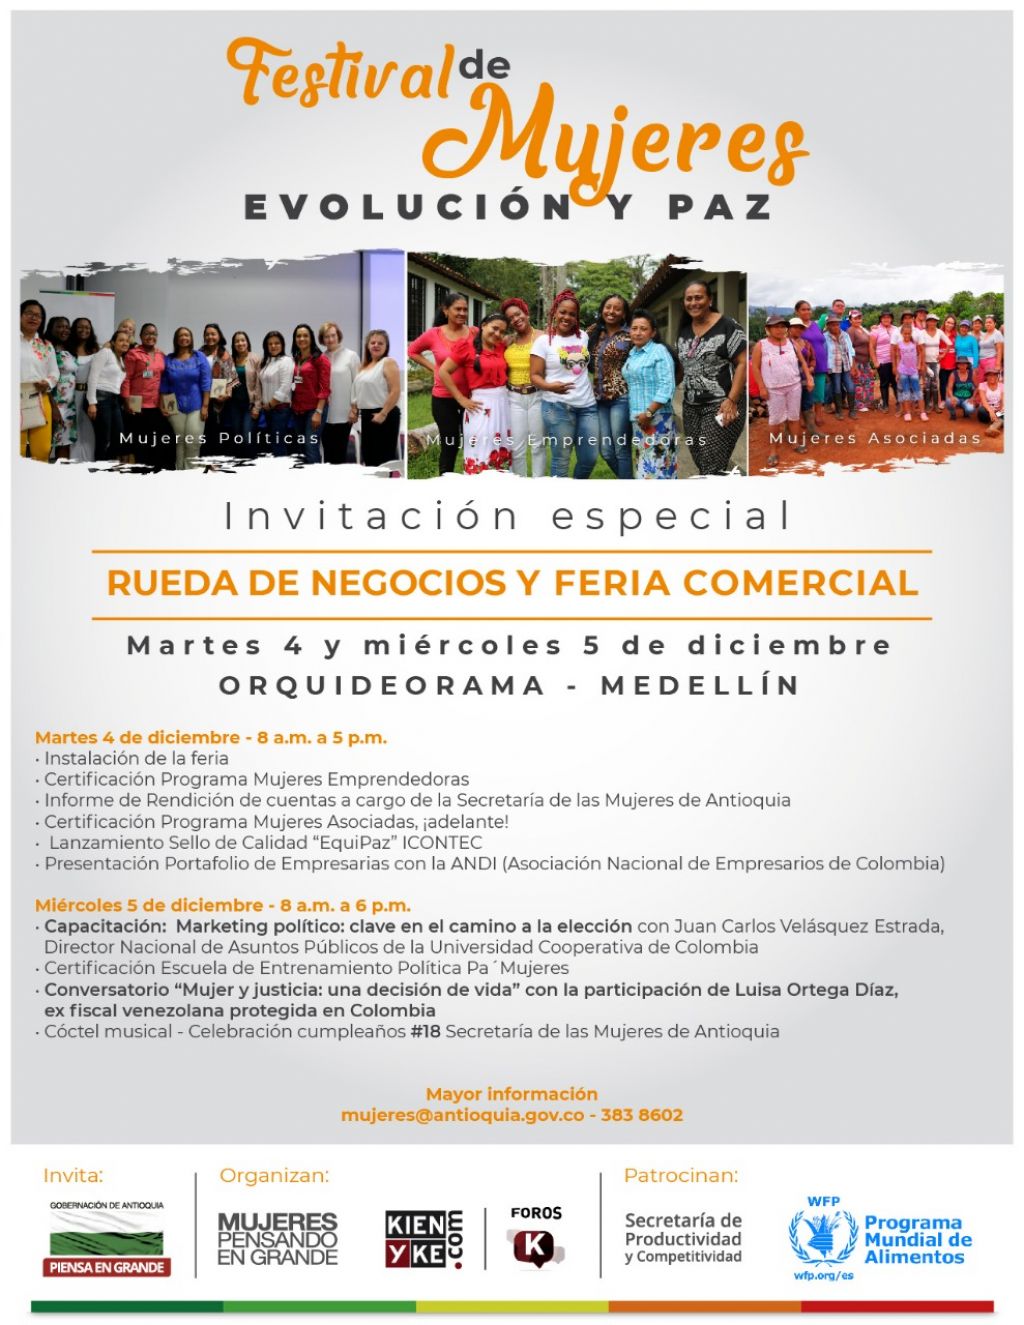 Invitación especial Festival de Mujeres Evolución y Paz